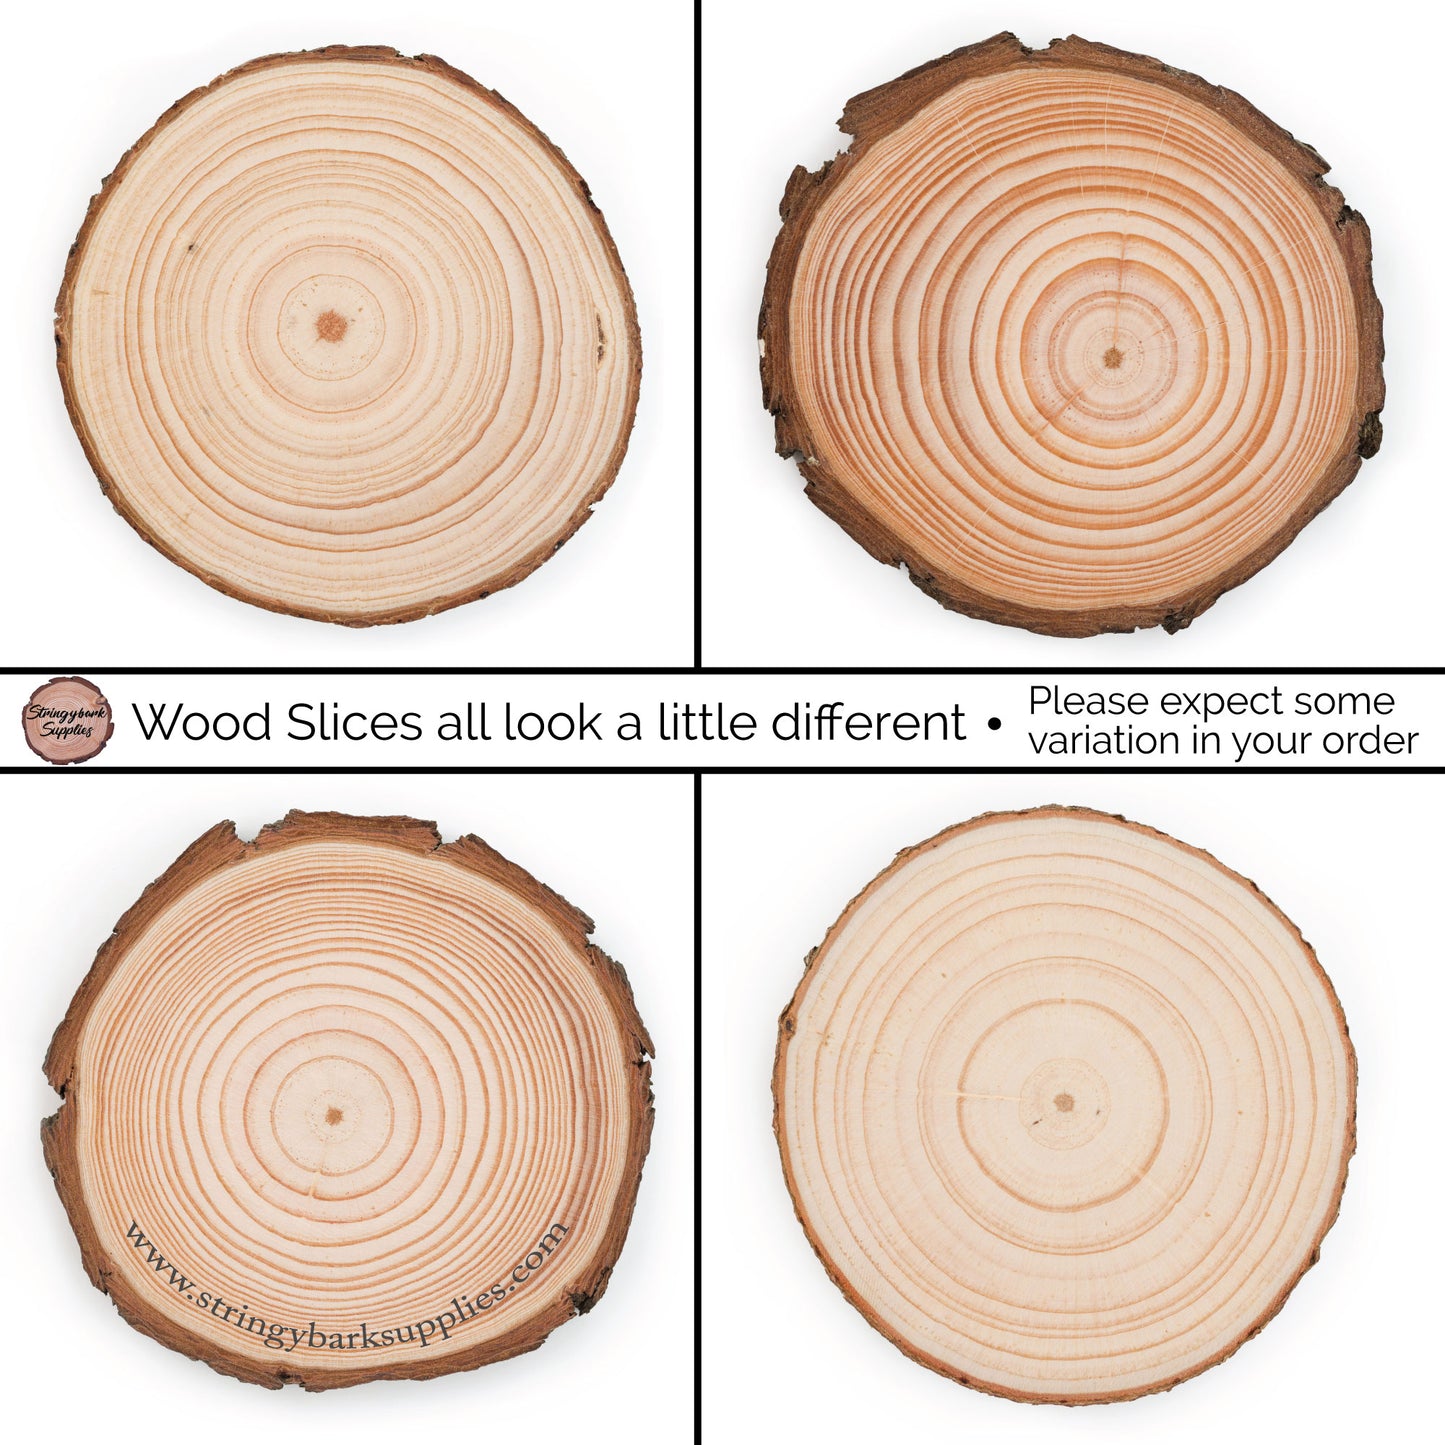 2 - 4 cm Wood Slices